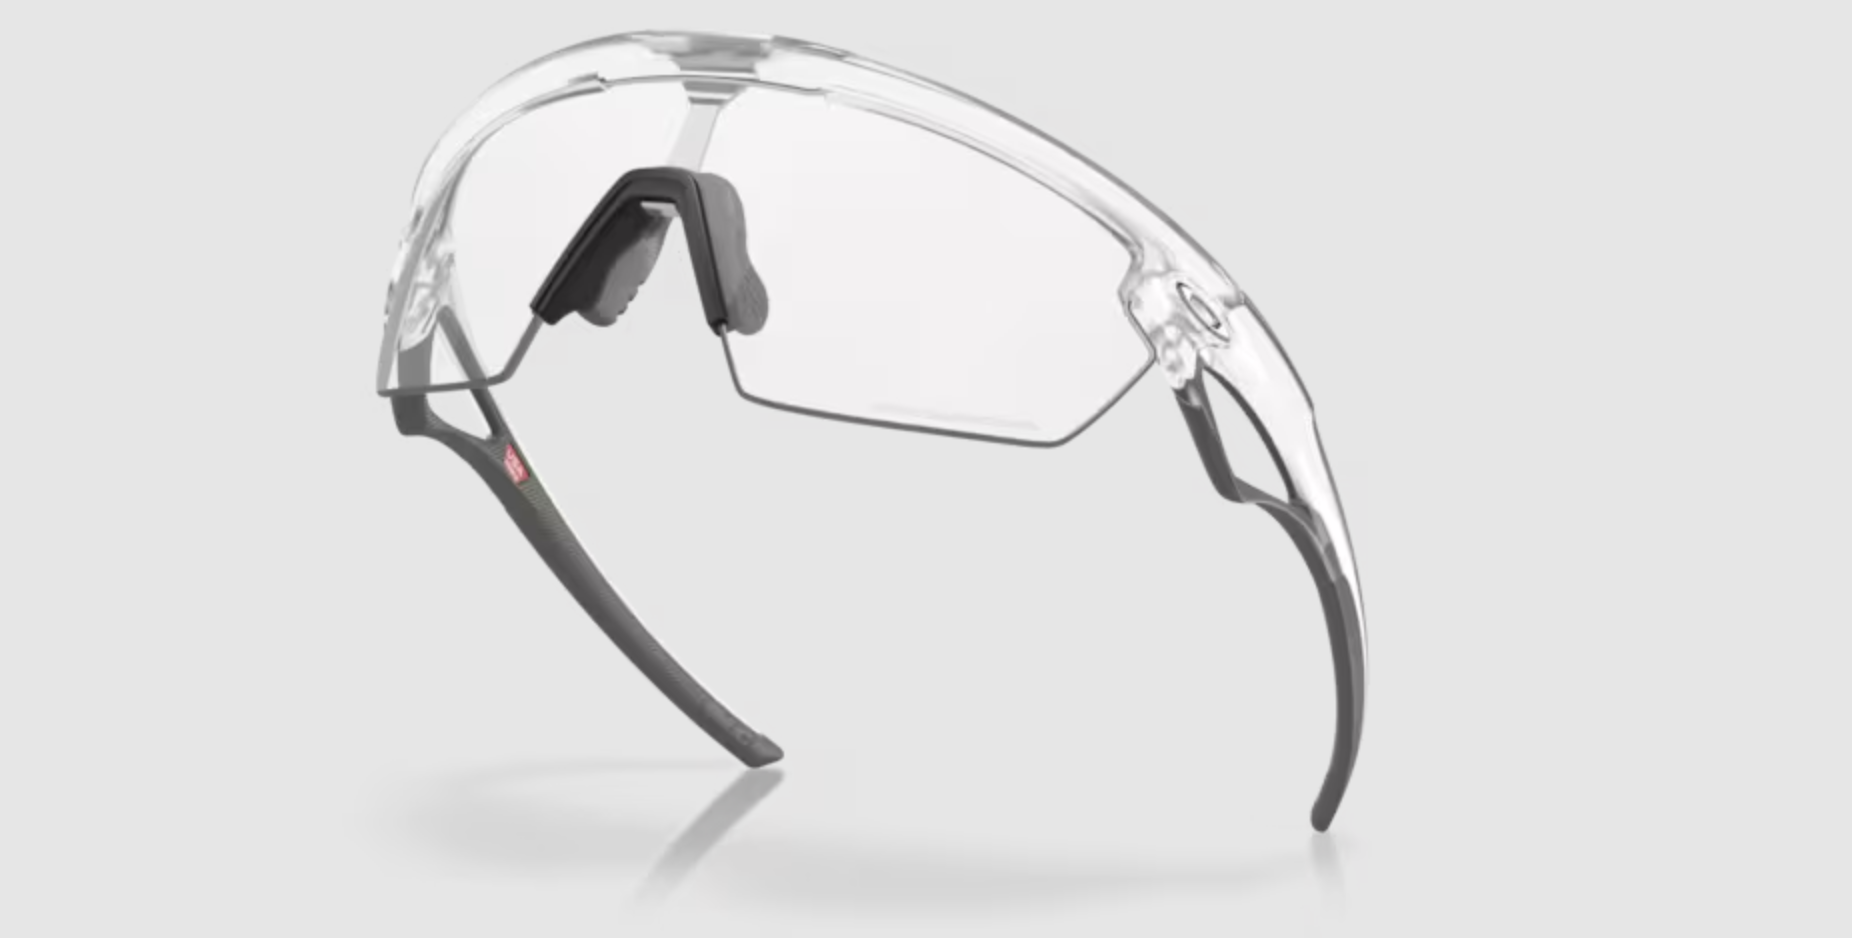 Oakley Sphaera Matte clear with photochromic lenses